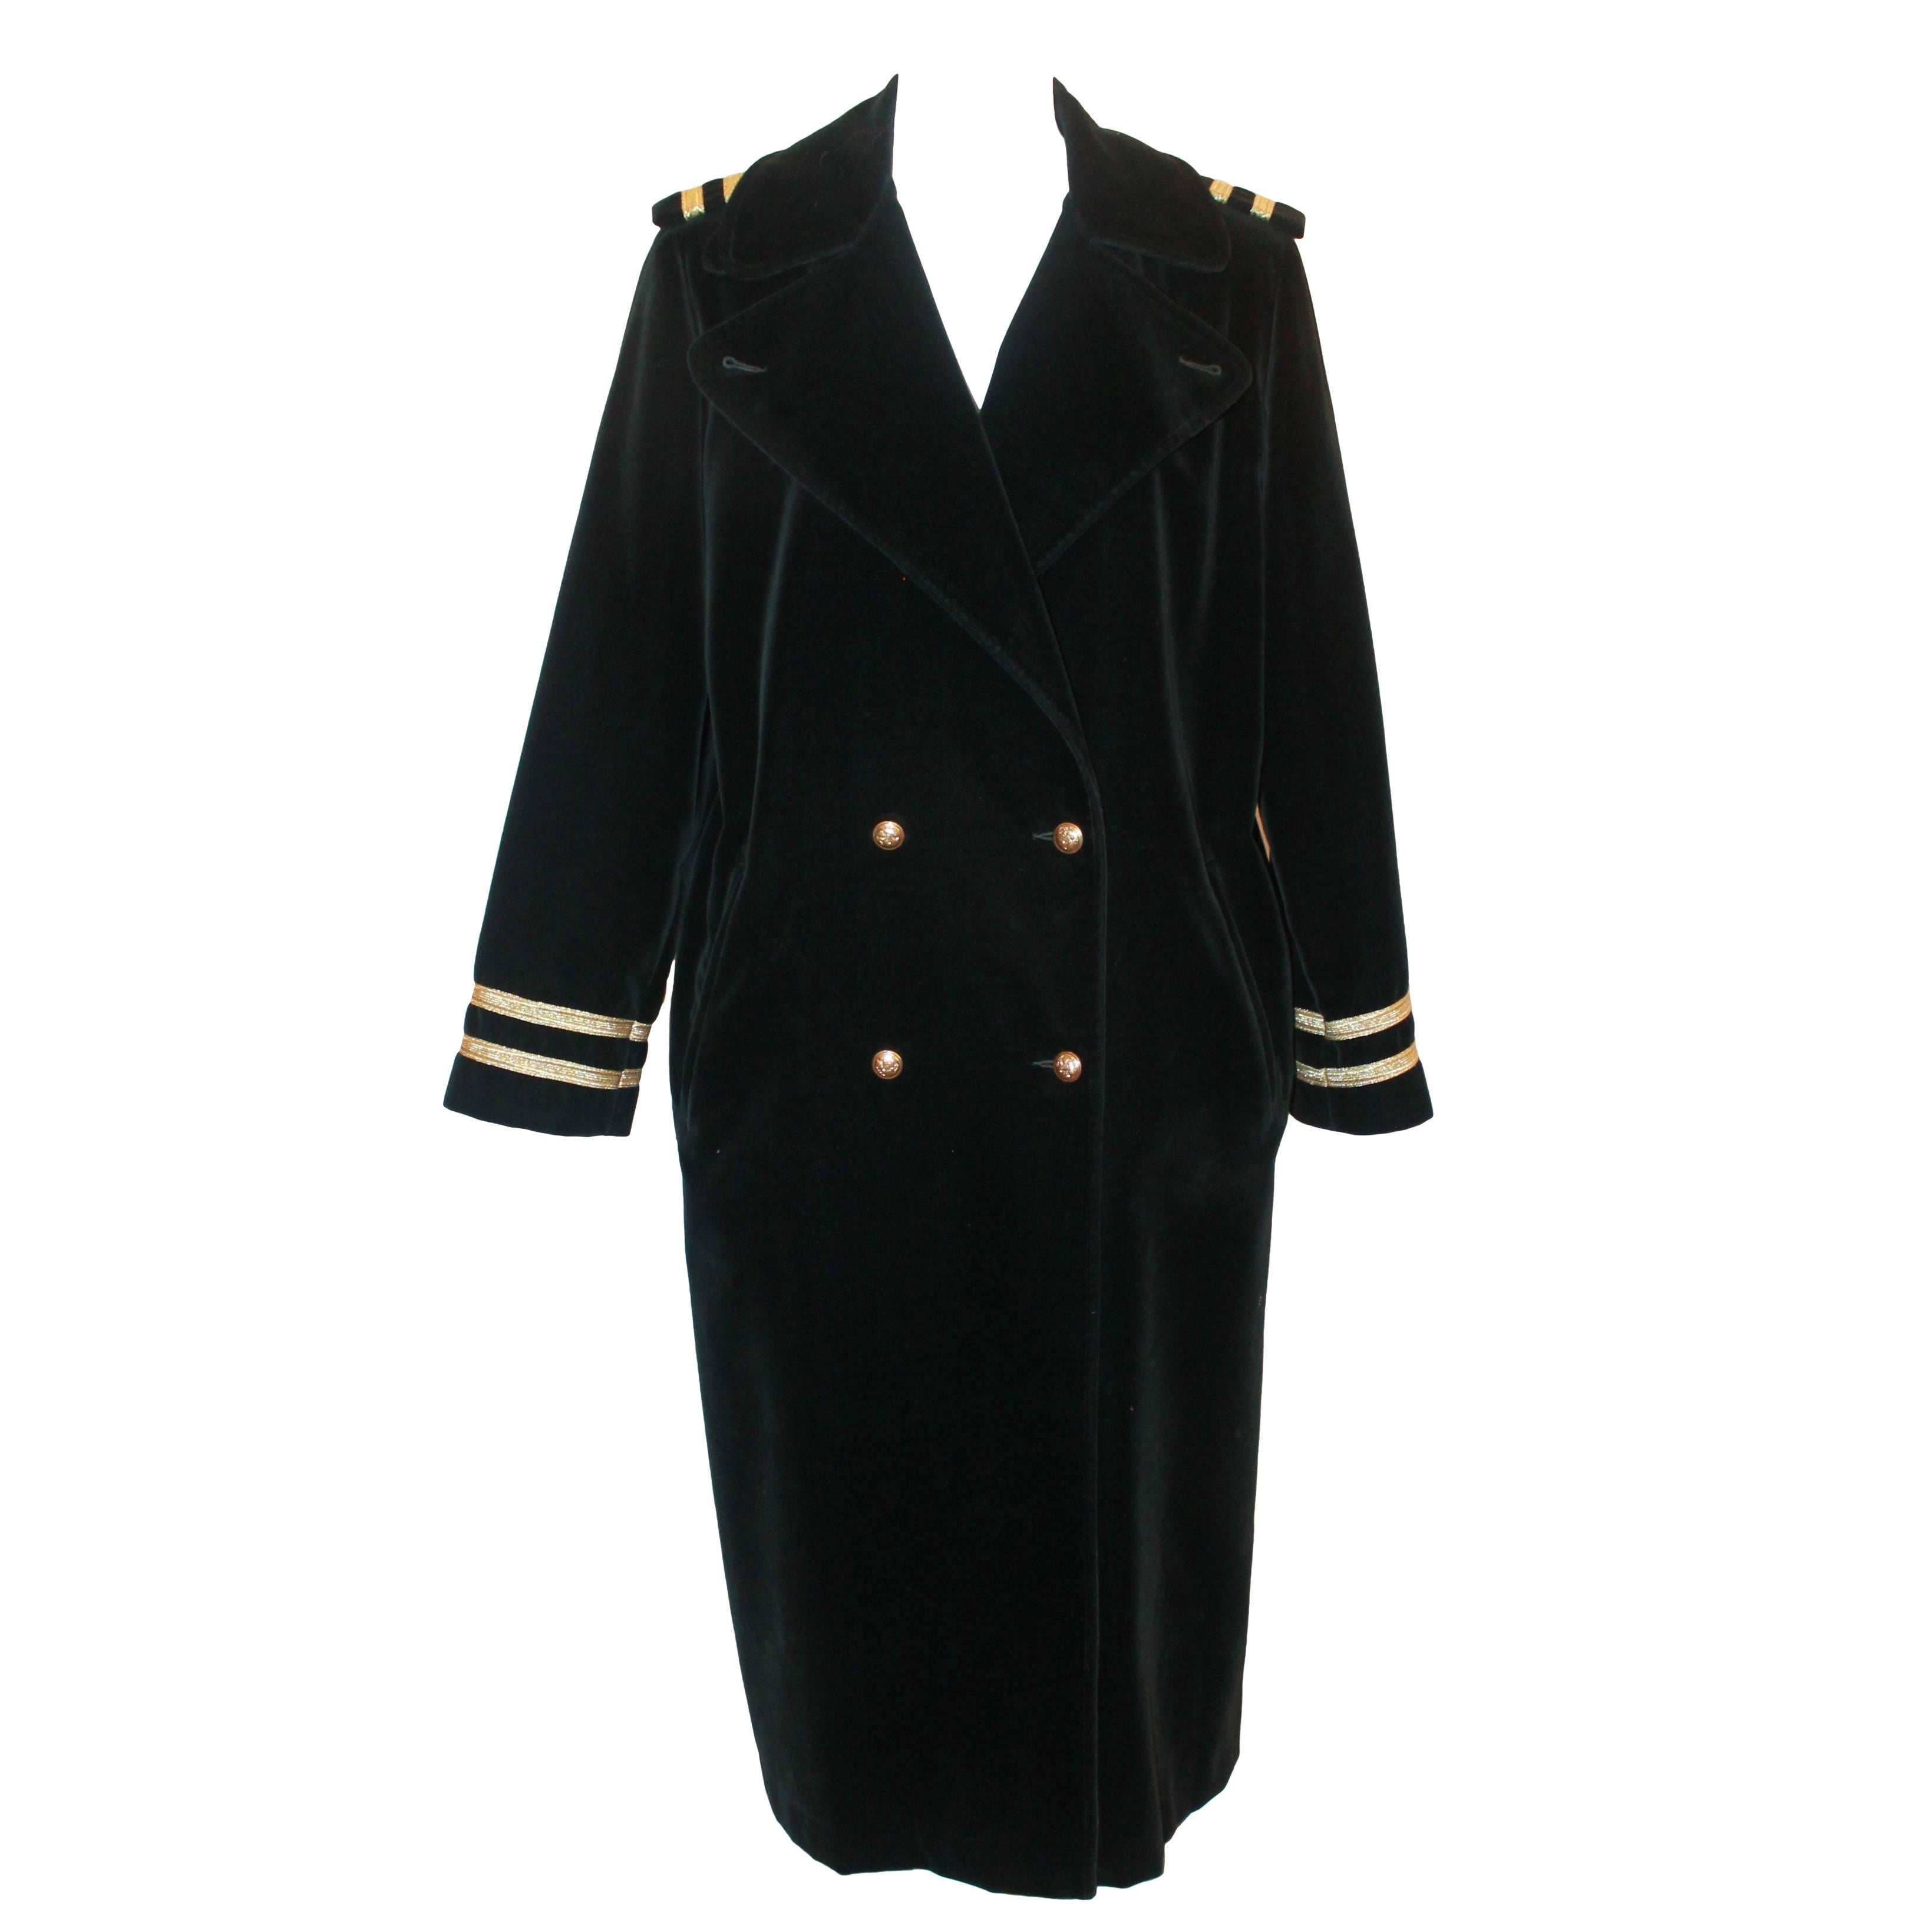 Carol Cohen Drizzle Vintage Black Velvet Nautical Style Rain Coat - M/L - 1990's